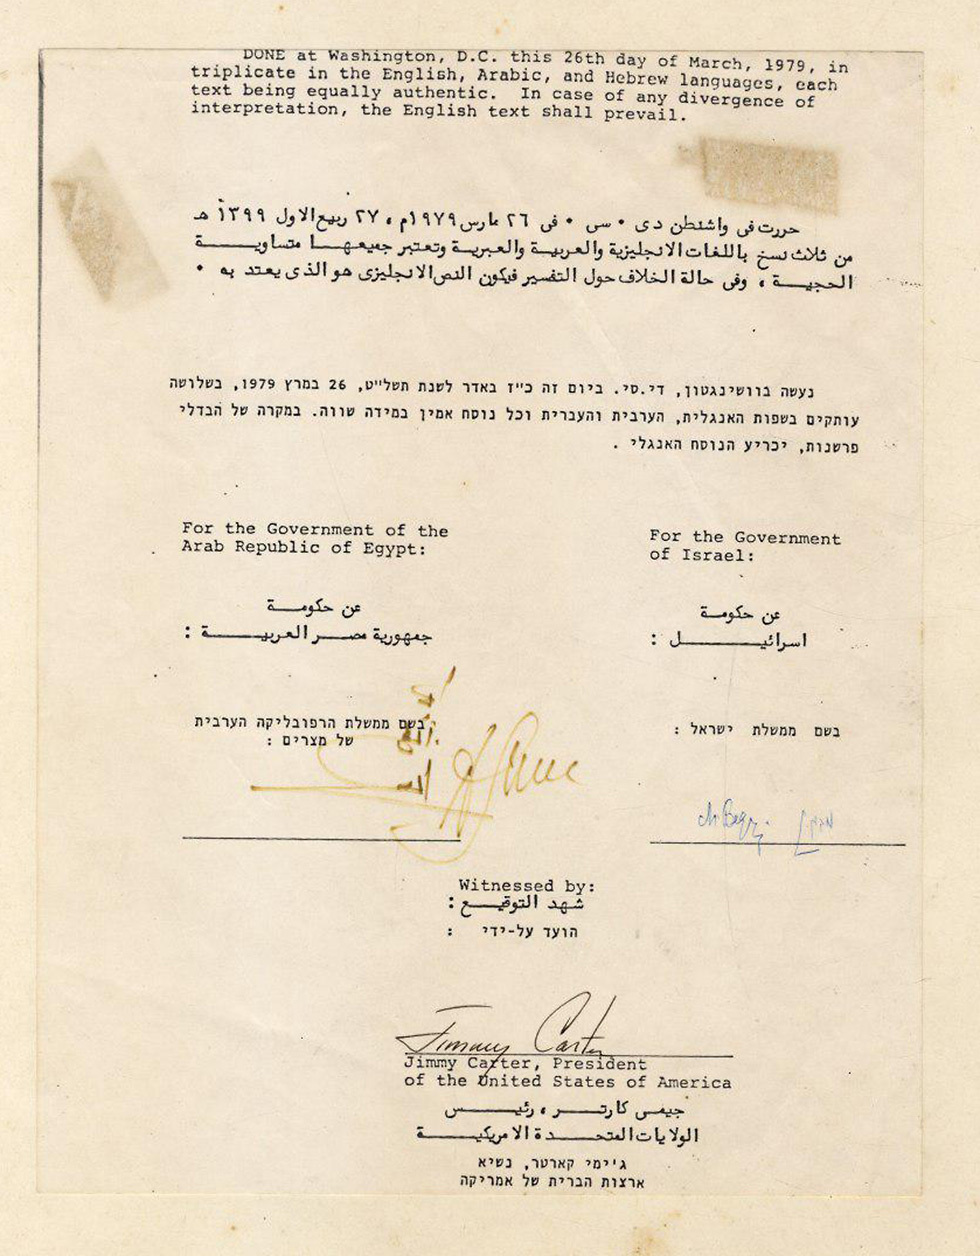 עותק הסכם השלום המקורי בין ישראל למצרים מוצע למכירה פומבית (צילום: בית המכירות ווינרס)